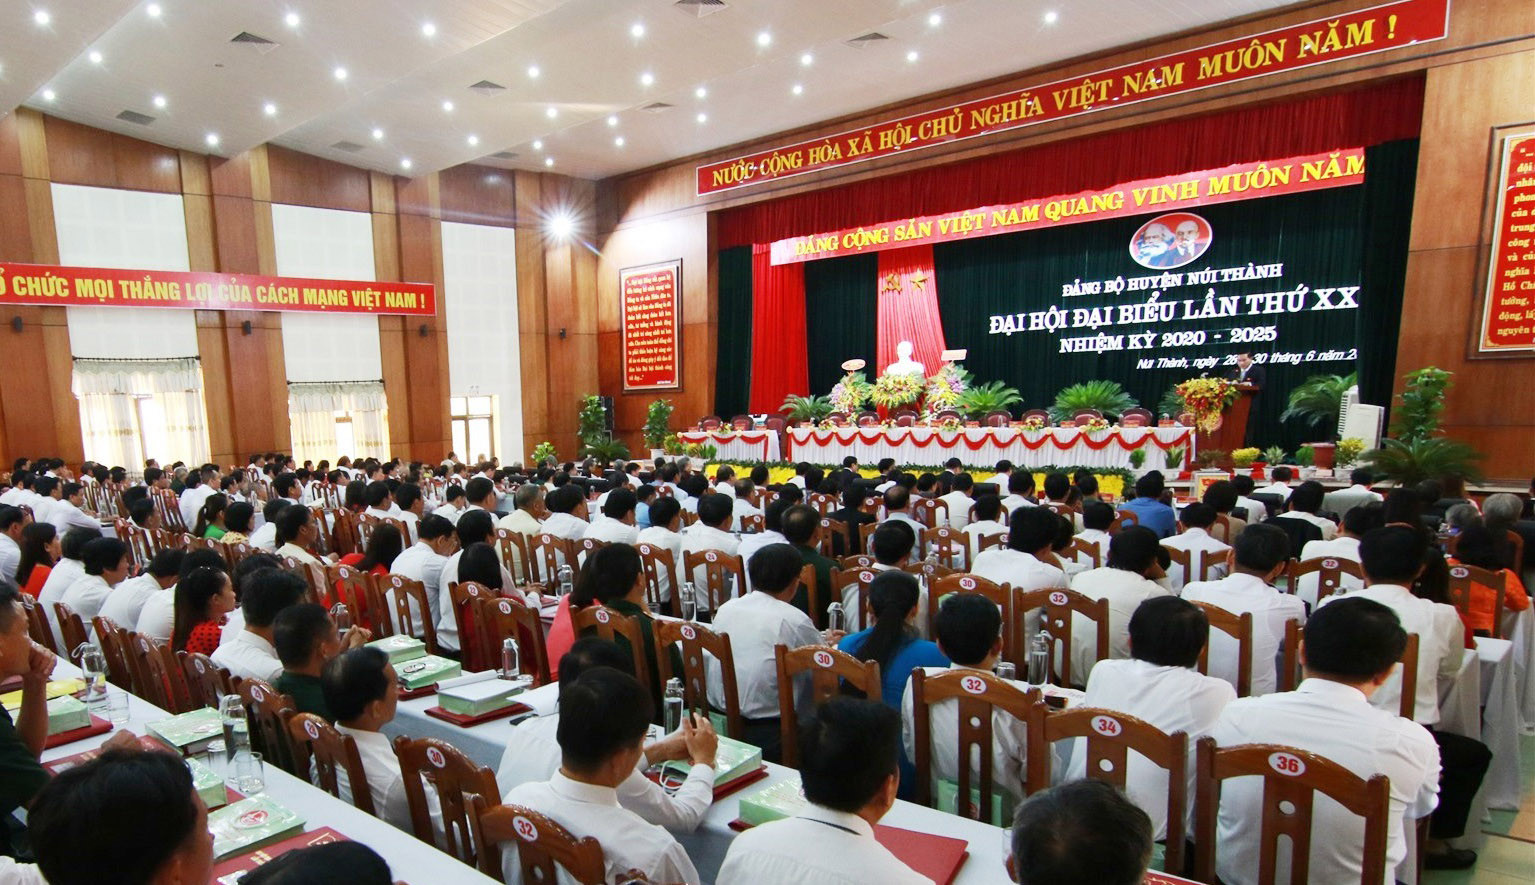 Chánh án TANDTC Nguyễn Hòa Bình dự Đại hội điểm Đảng bộ huyện Núi Thành